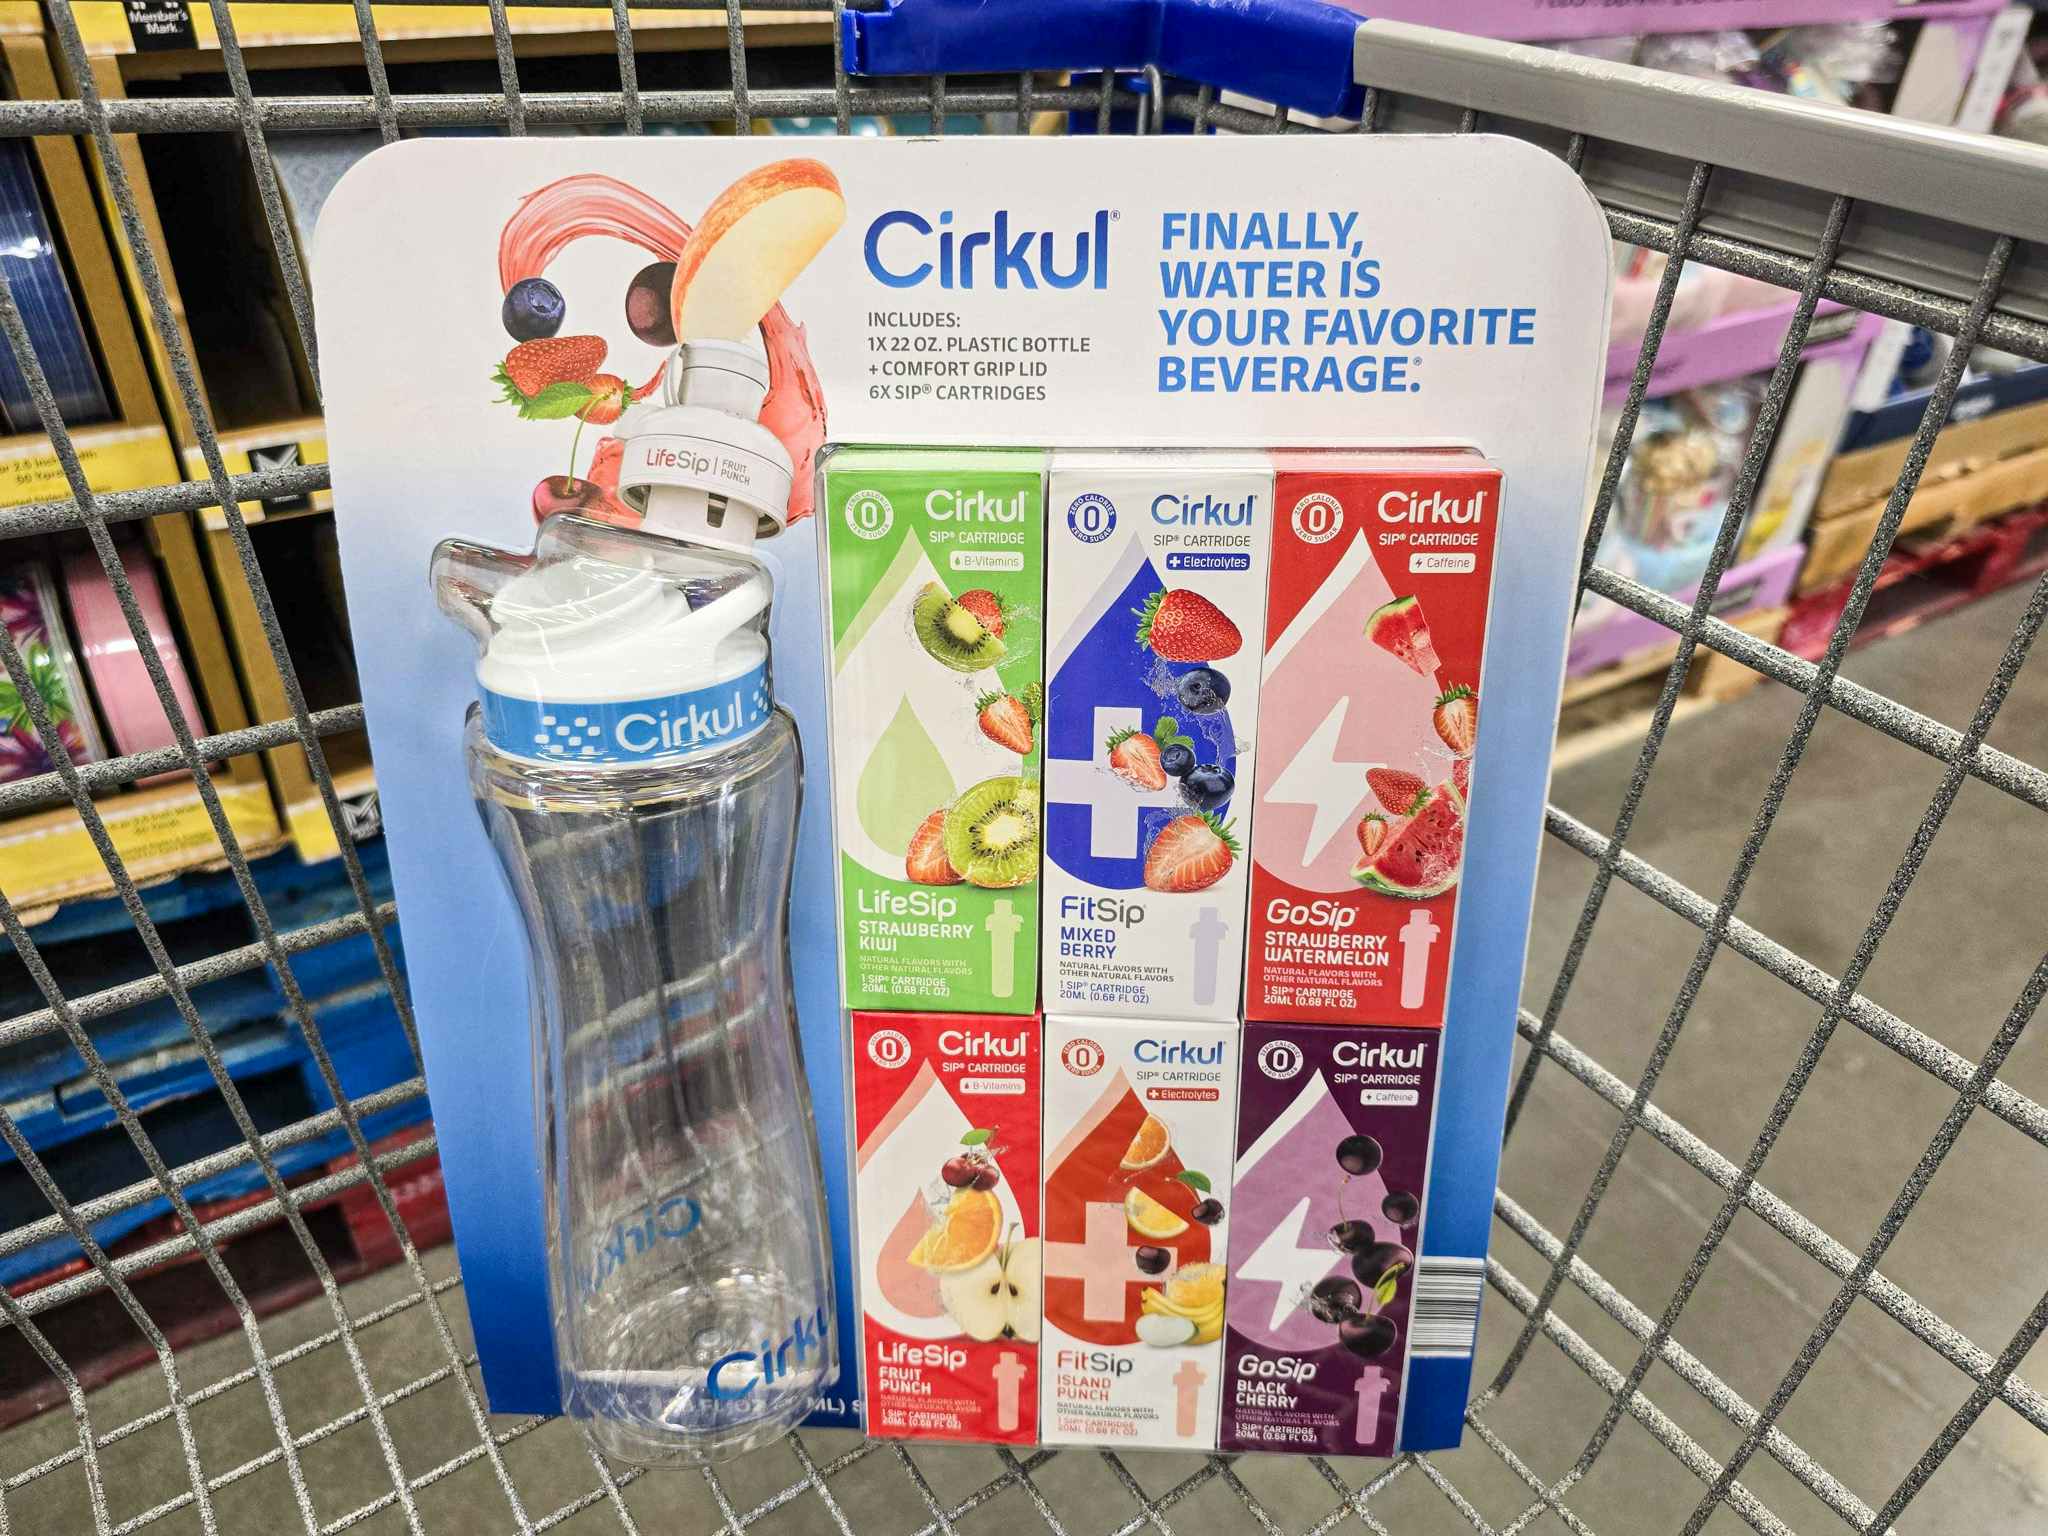 cirkul water bottle in a cart